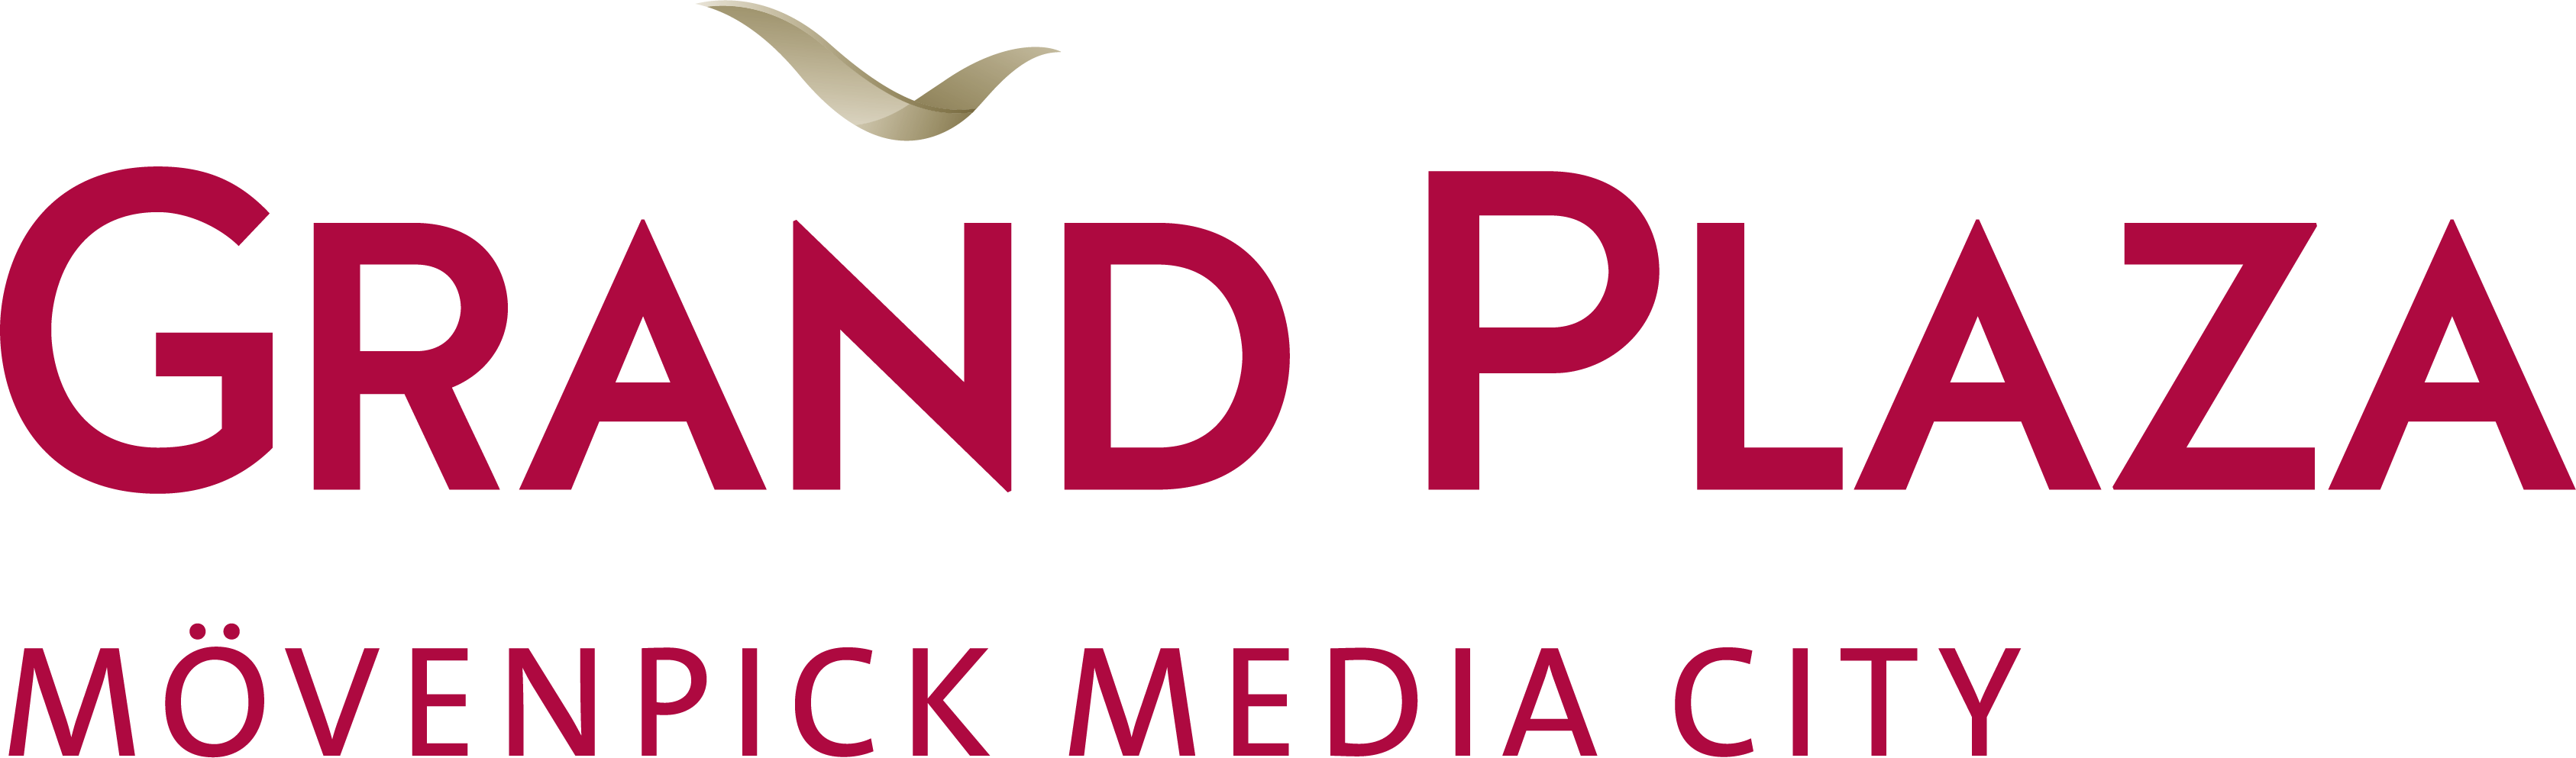 Grand Plaza Movenpick Media City logo